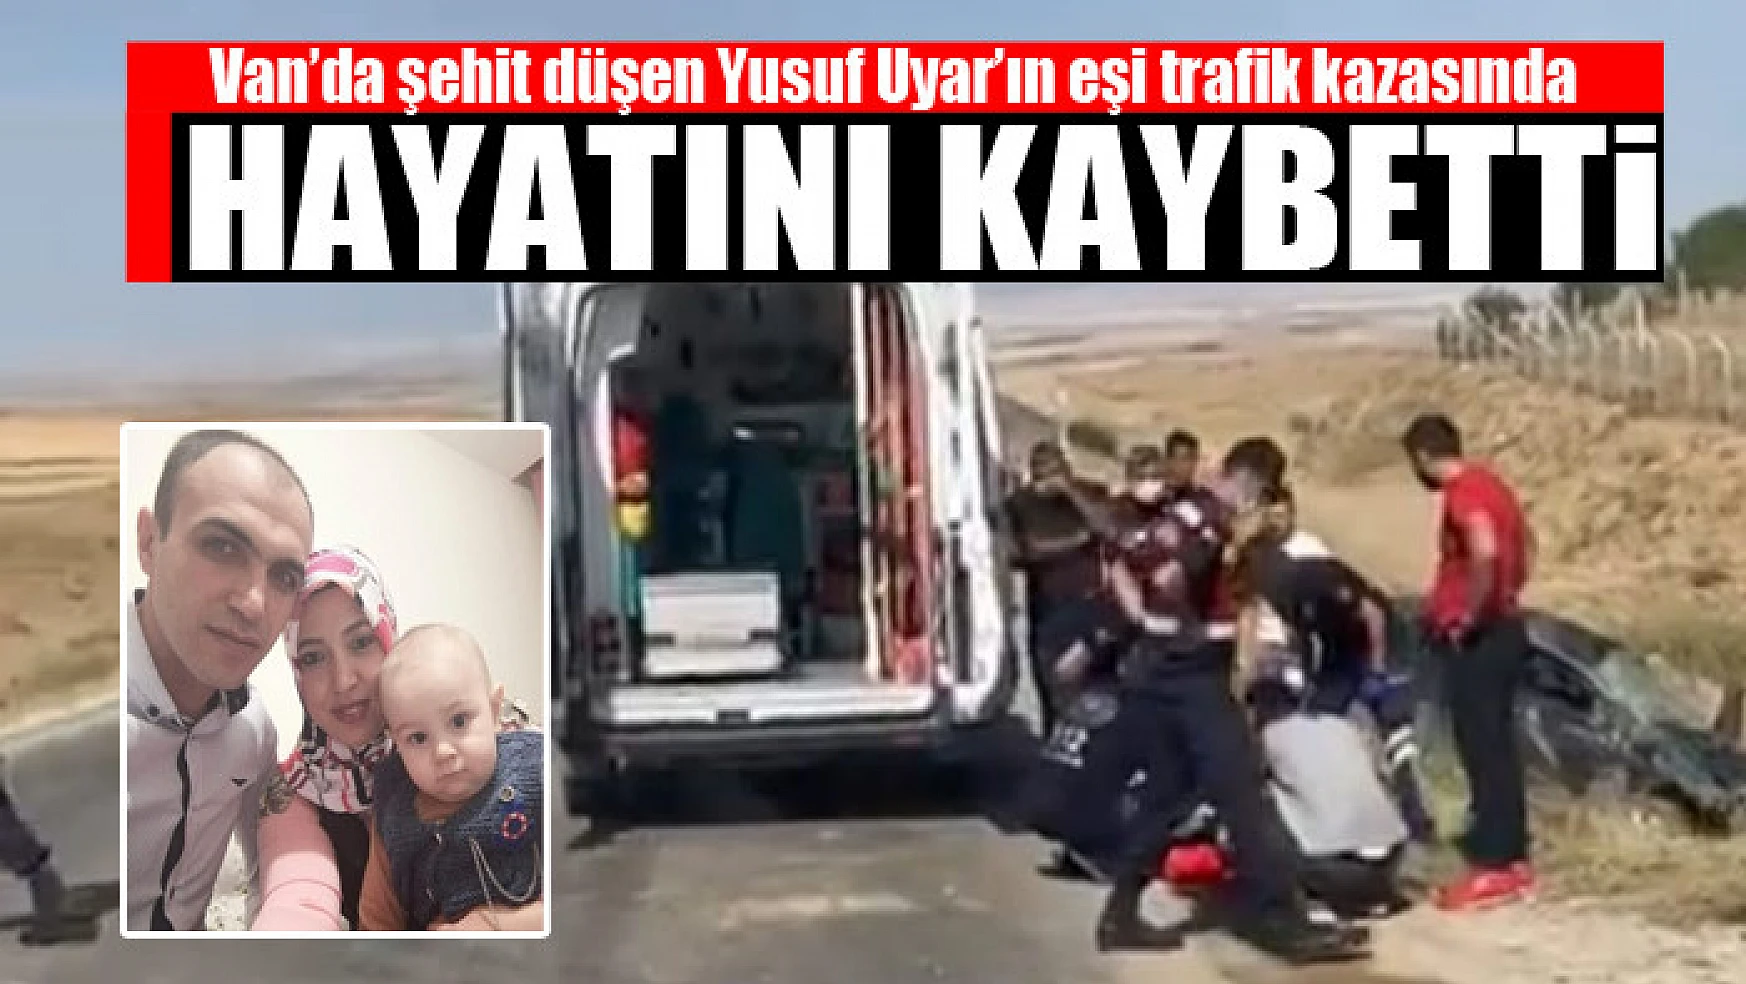 Van'da şehit düşen Yusuf Uyar'ın eşi trafik kazasında hayatını kaybetti